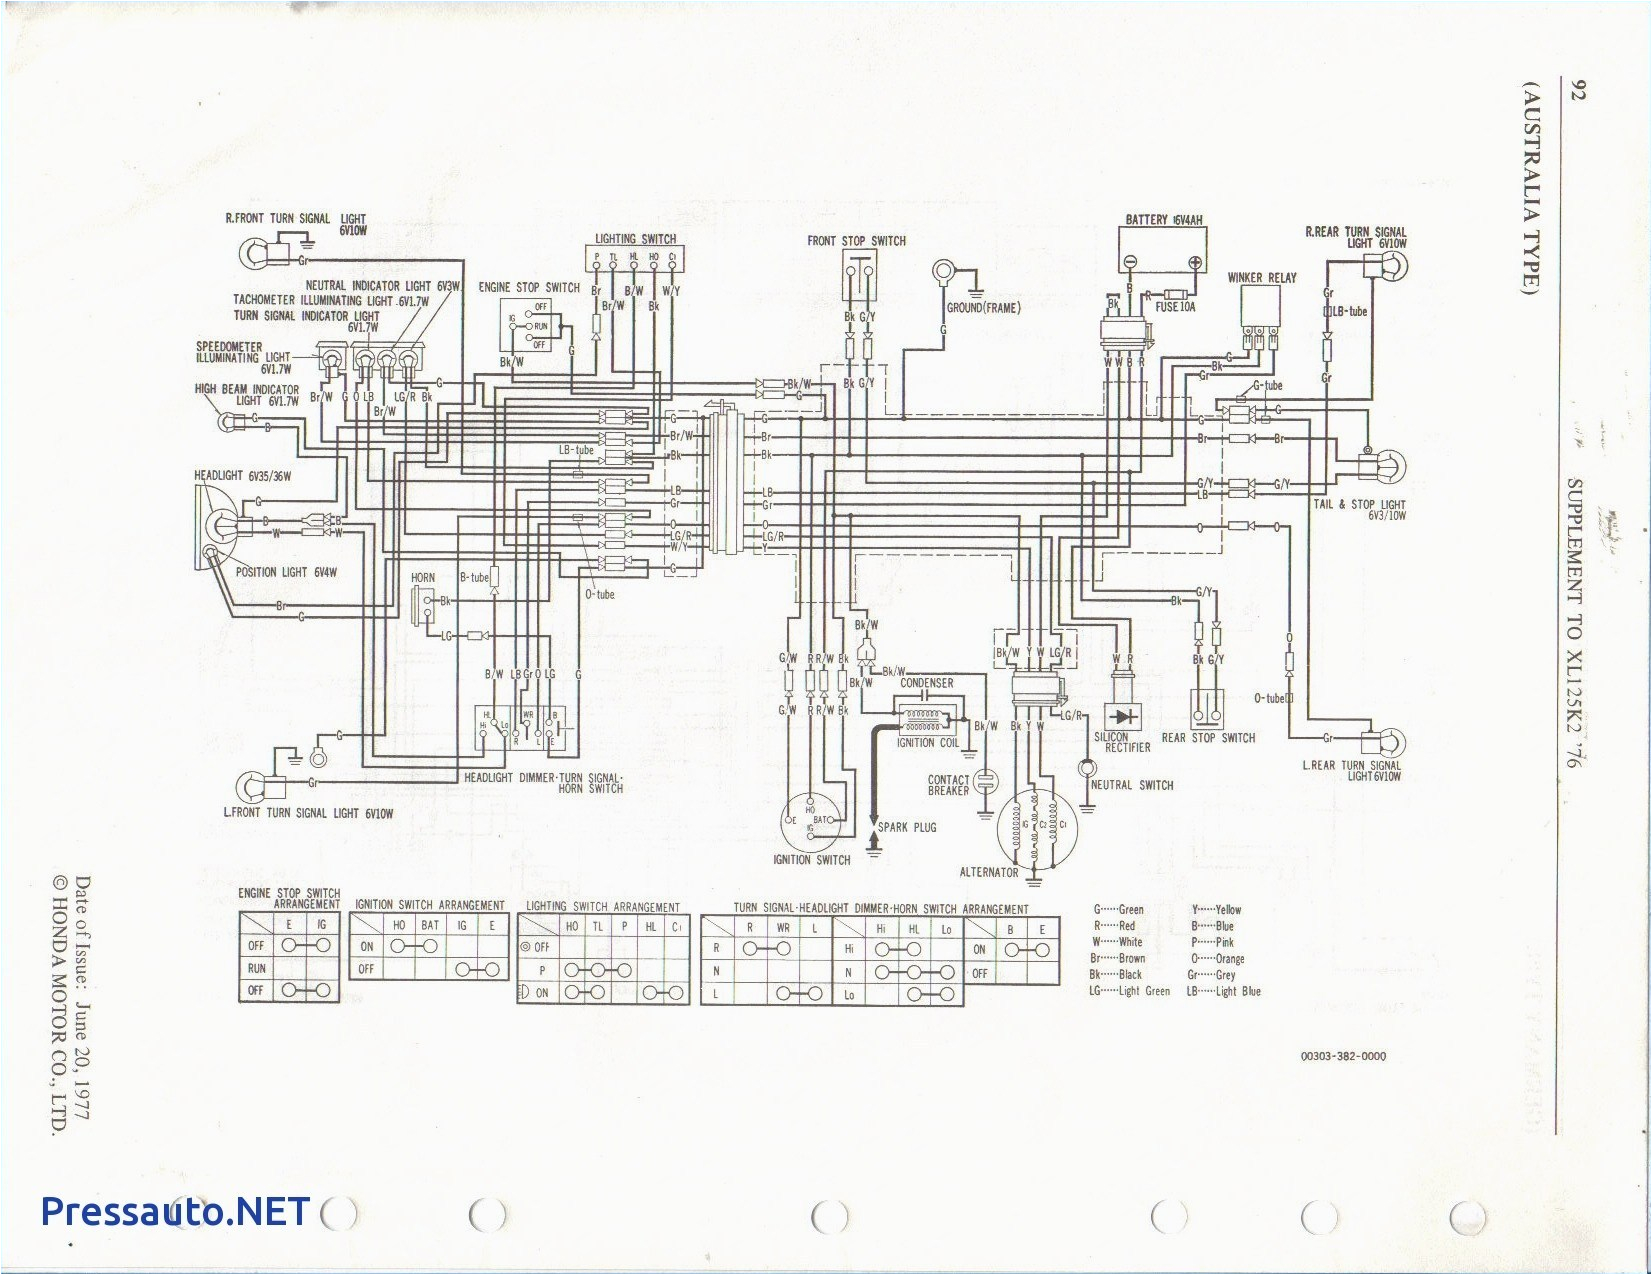 xl125 wiring diagram wiring diagram blog xl125 wiring diagram xl125 wiring diagram